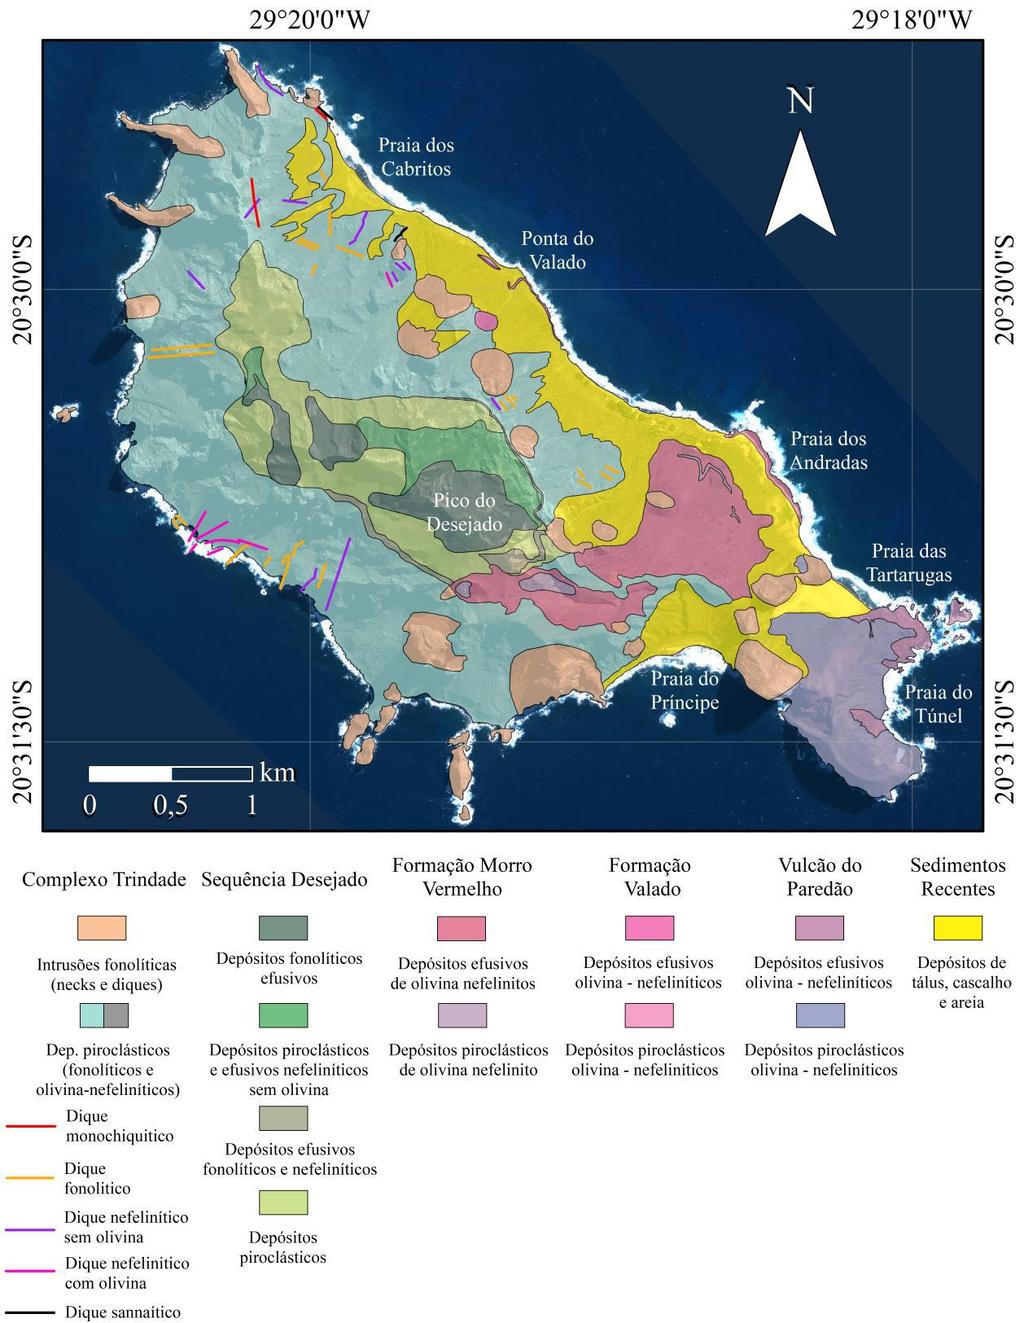 7 Figura 5 - Mapa geológico da ilha da Trindade. Modificado de Pires, et al. (2016).